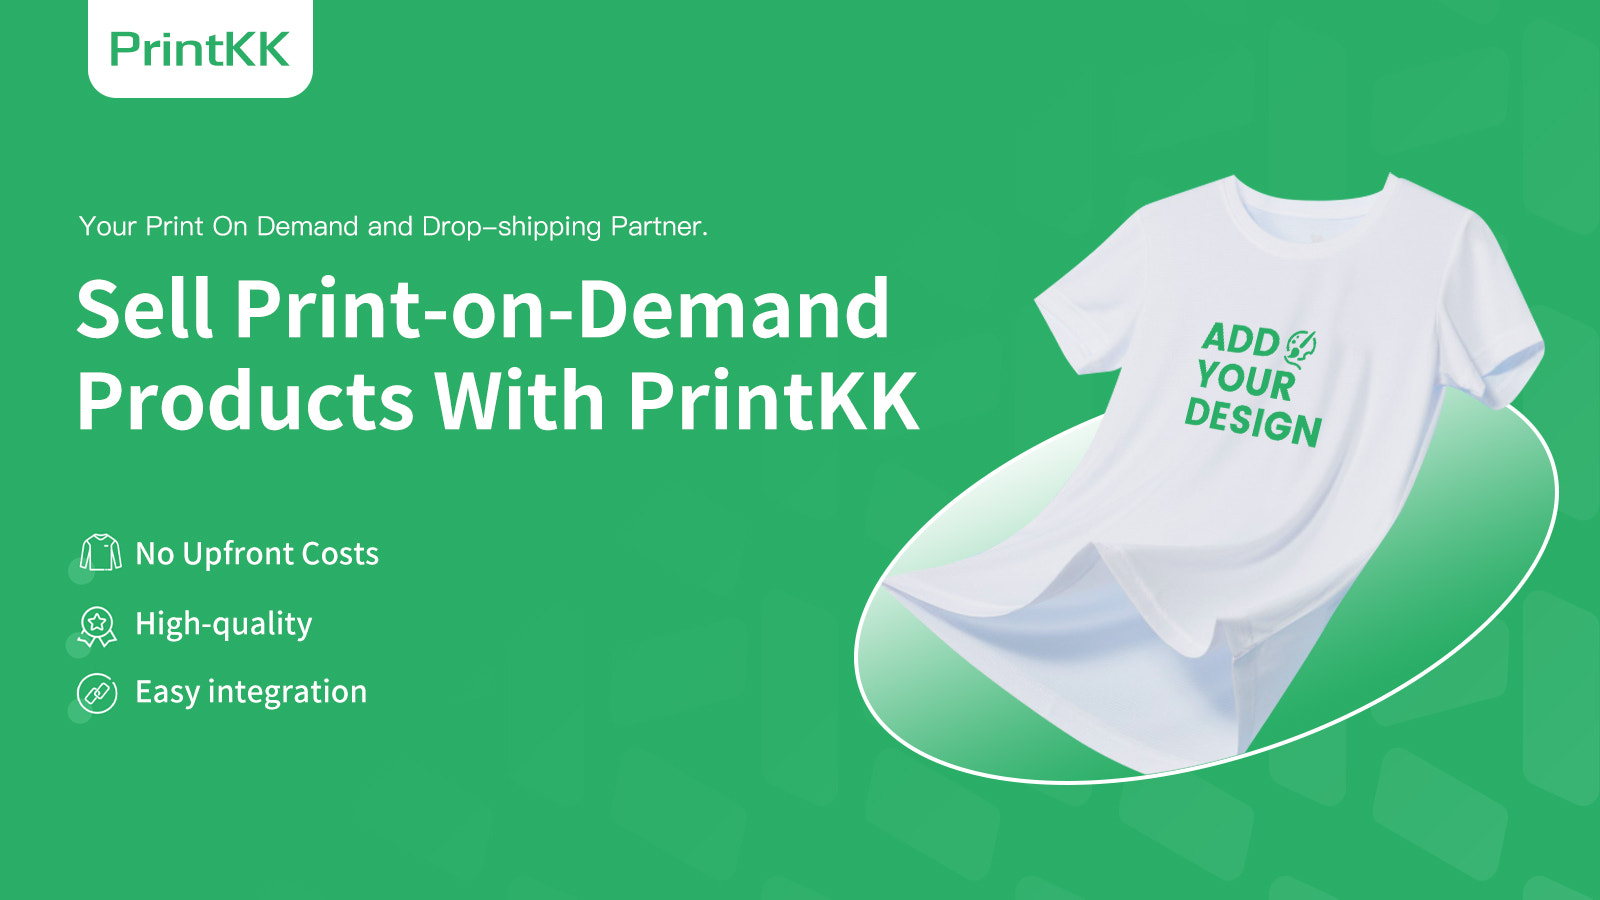 PrintKK Print-on-Demand